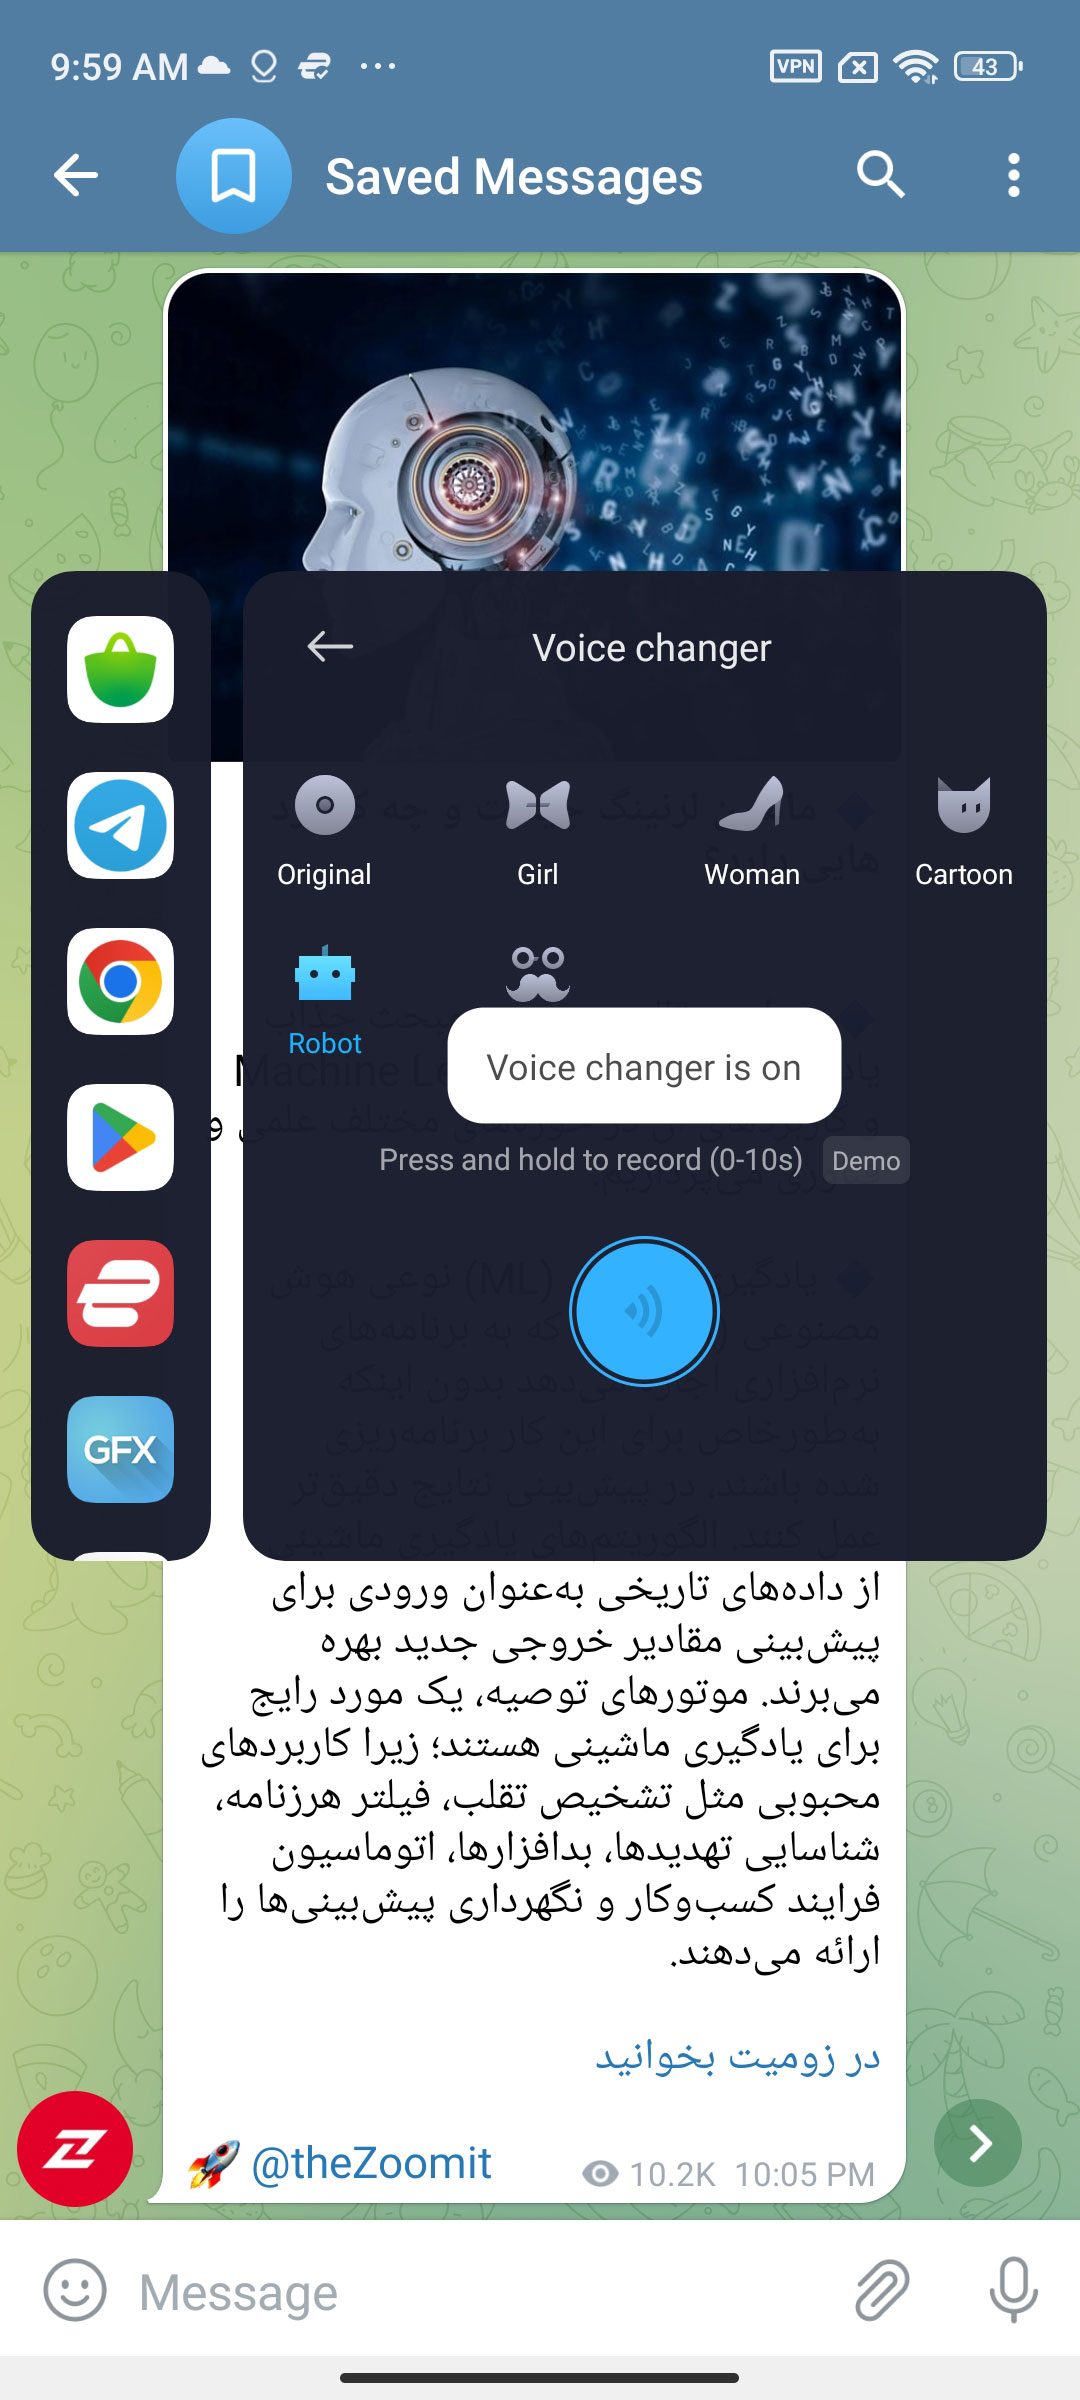 تغییر صدا در تلگرام با شیائومی گیم توربو